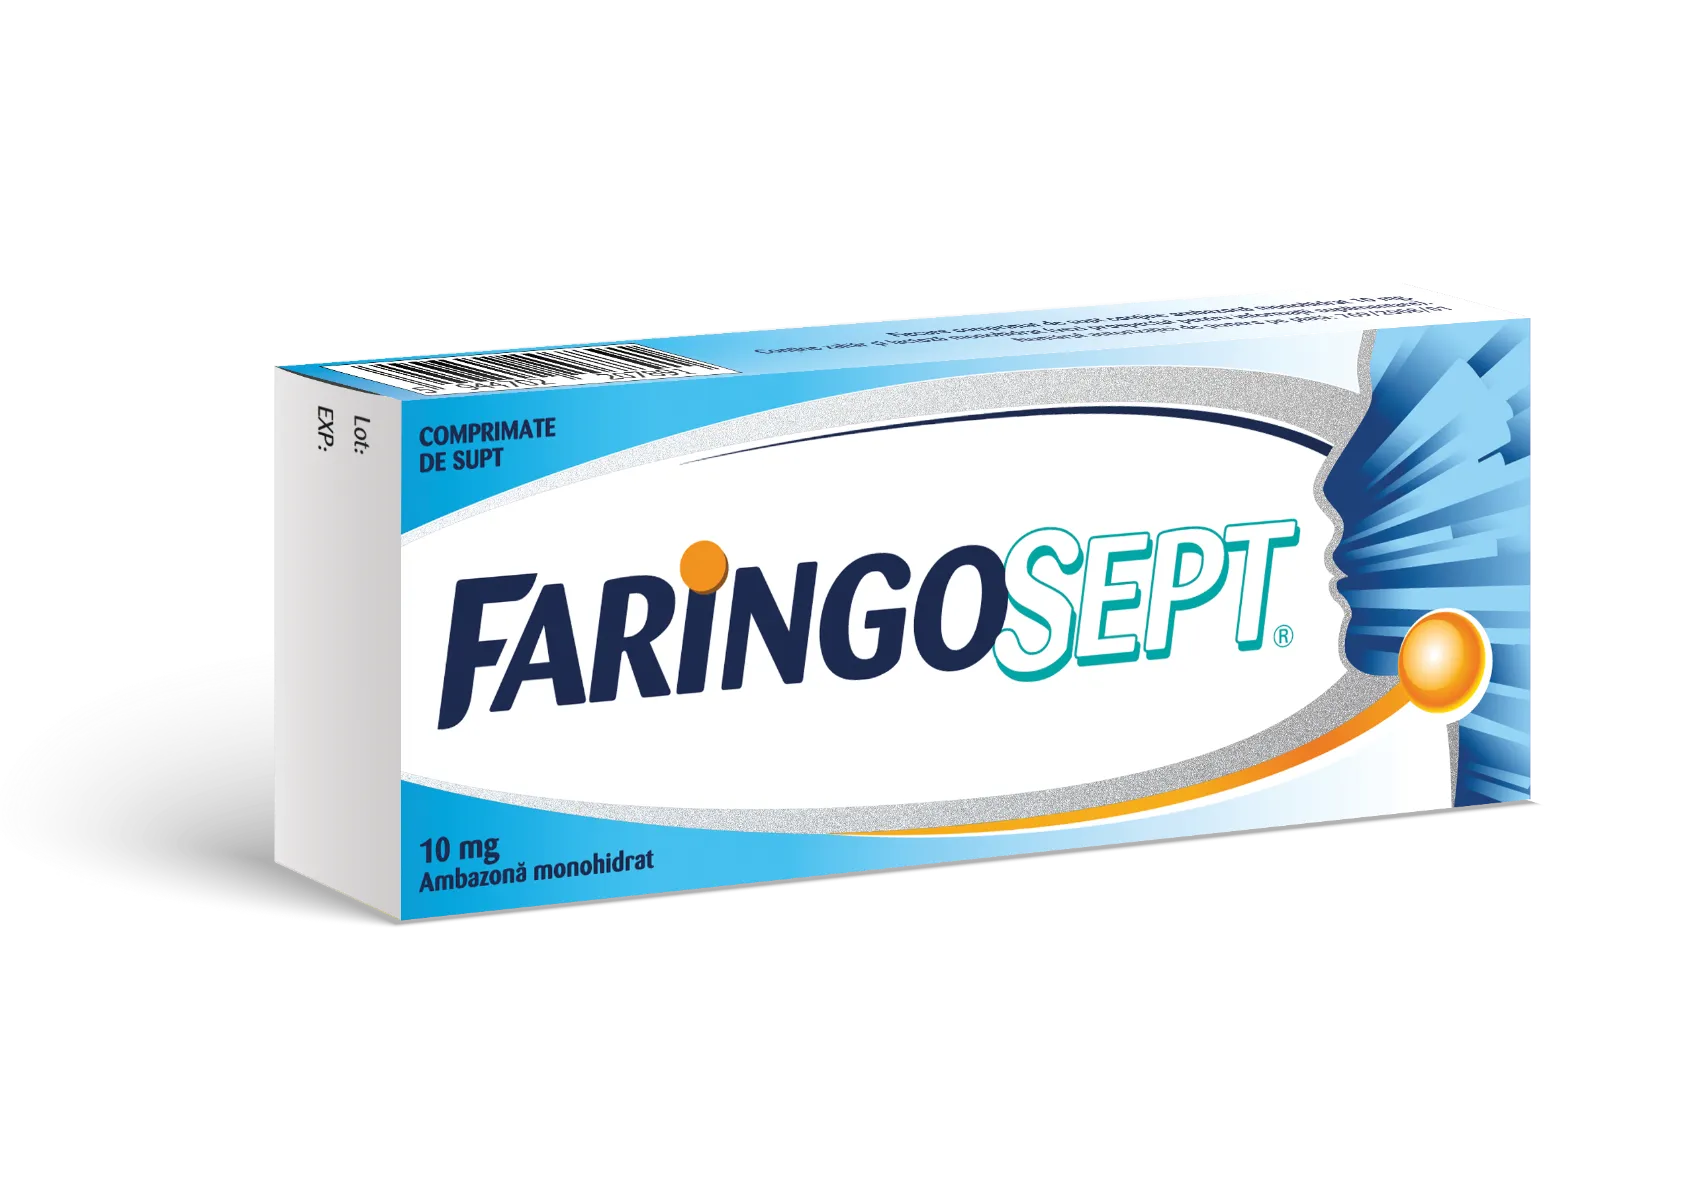 Faringosept 10 mg, 10 comprimate, Terapia